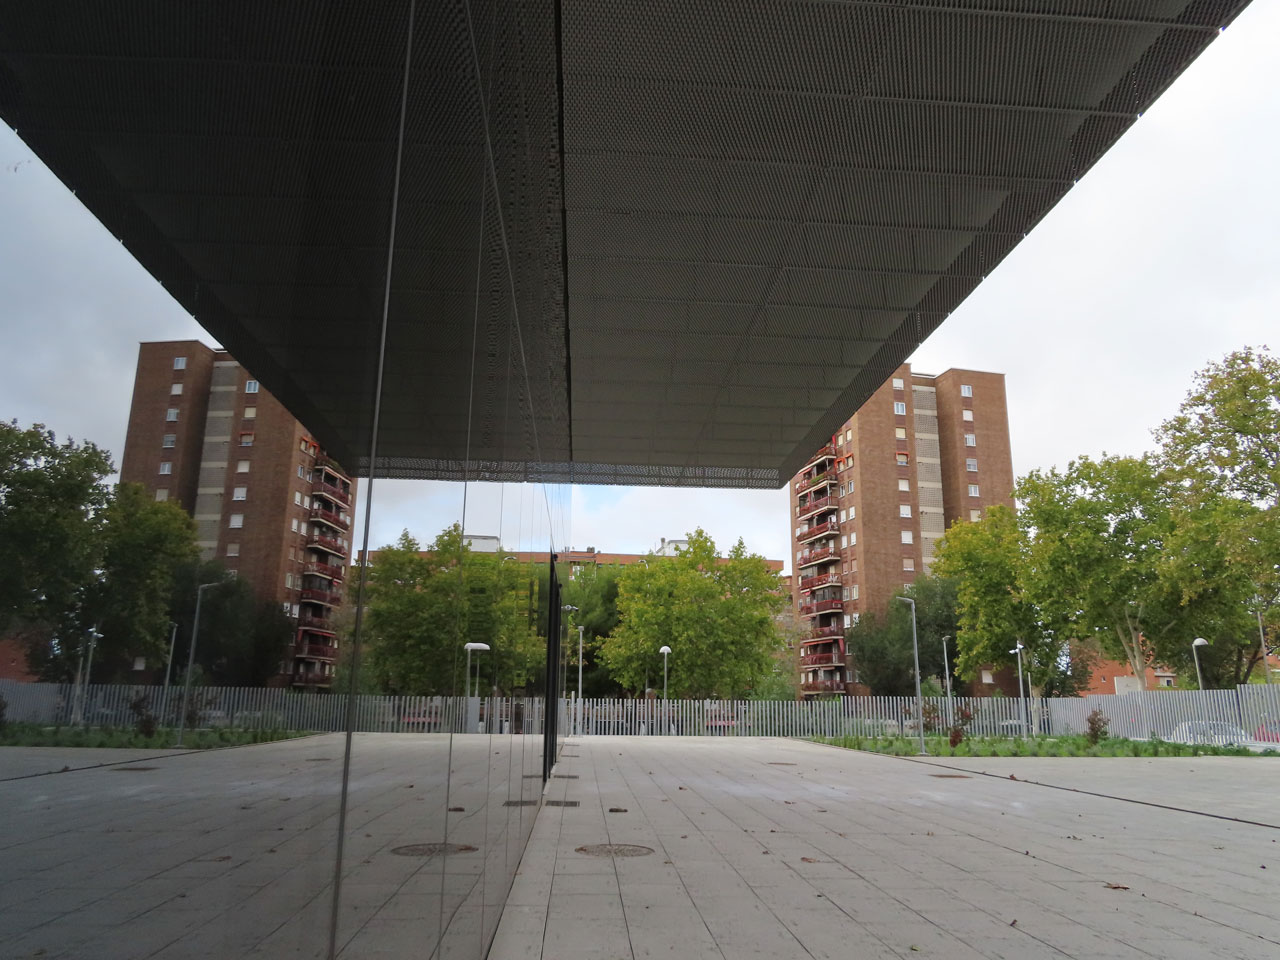 La nueva sede de Policía Municipal en Puente de Vallecas duplica su espacio